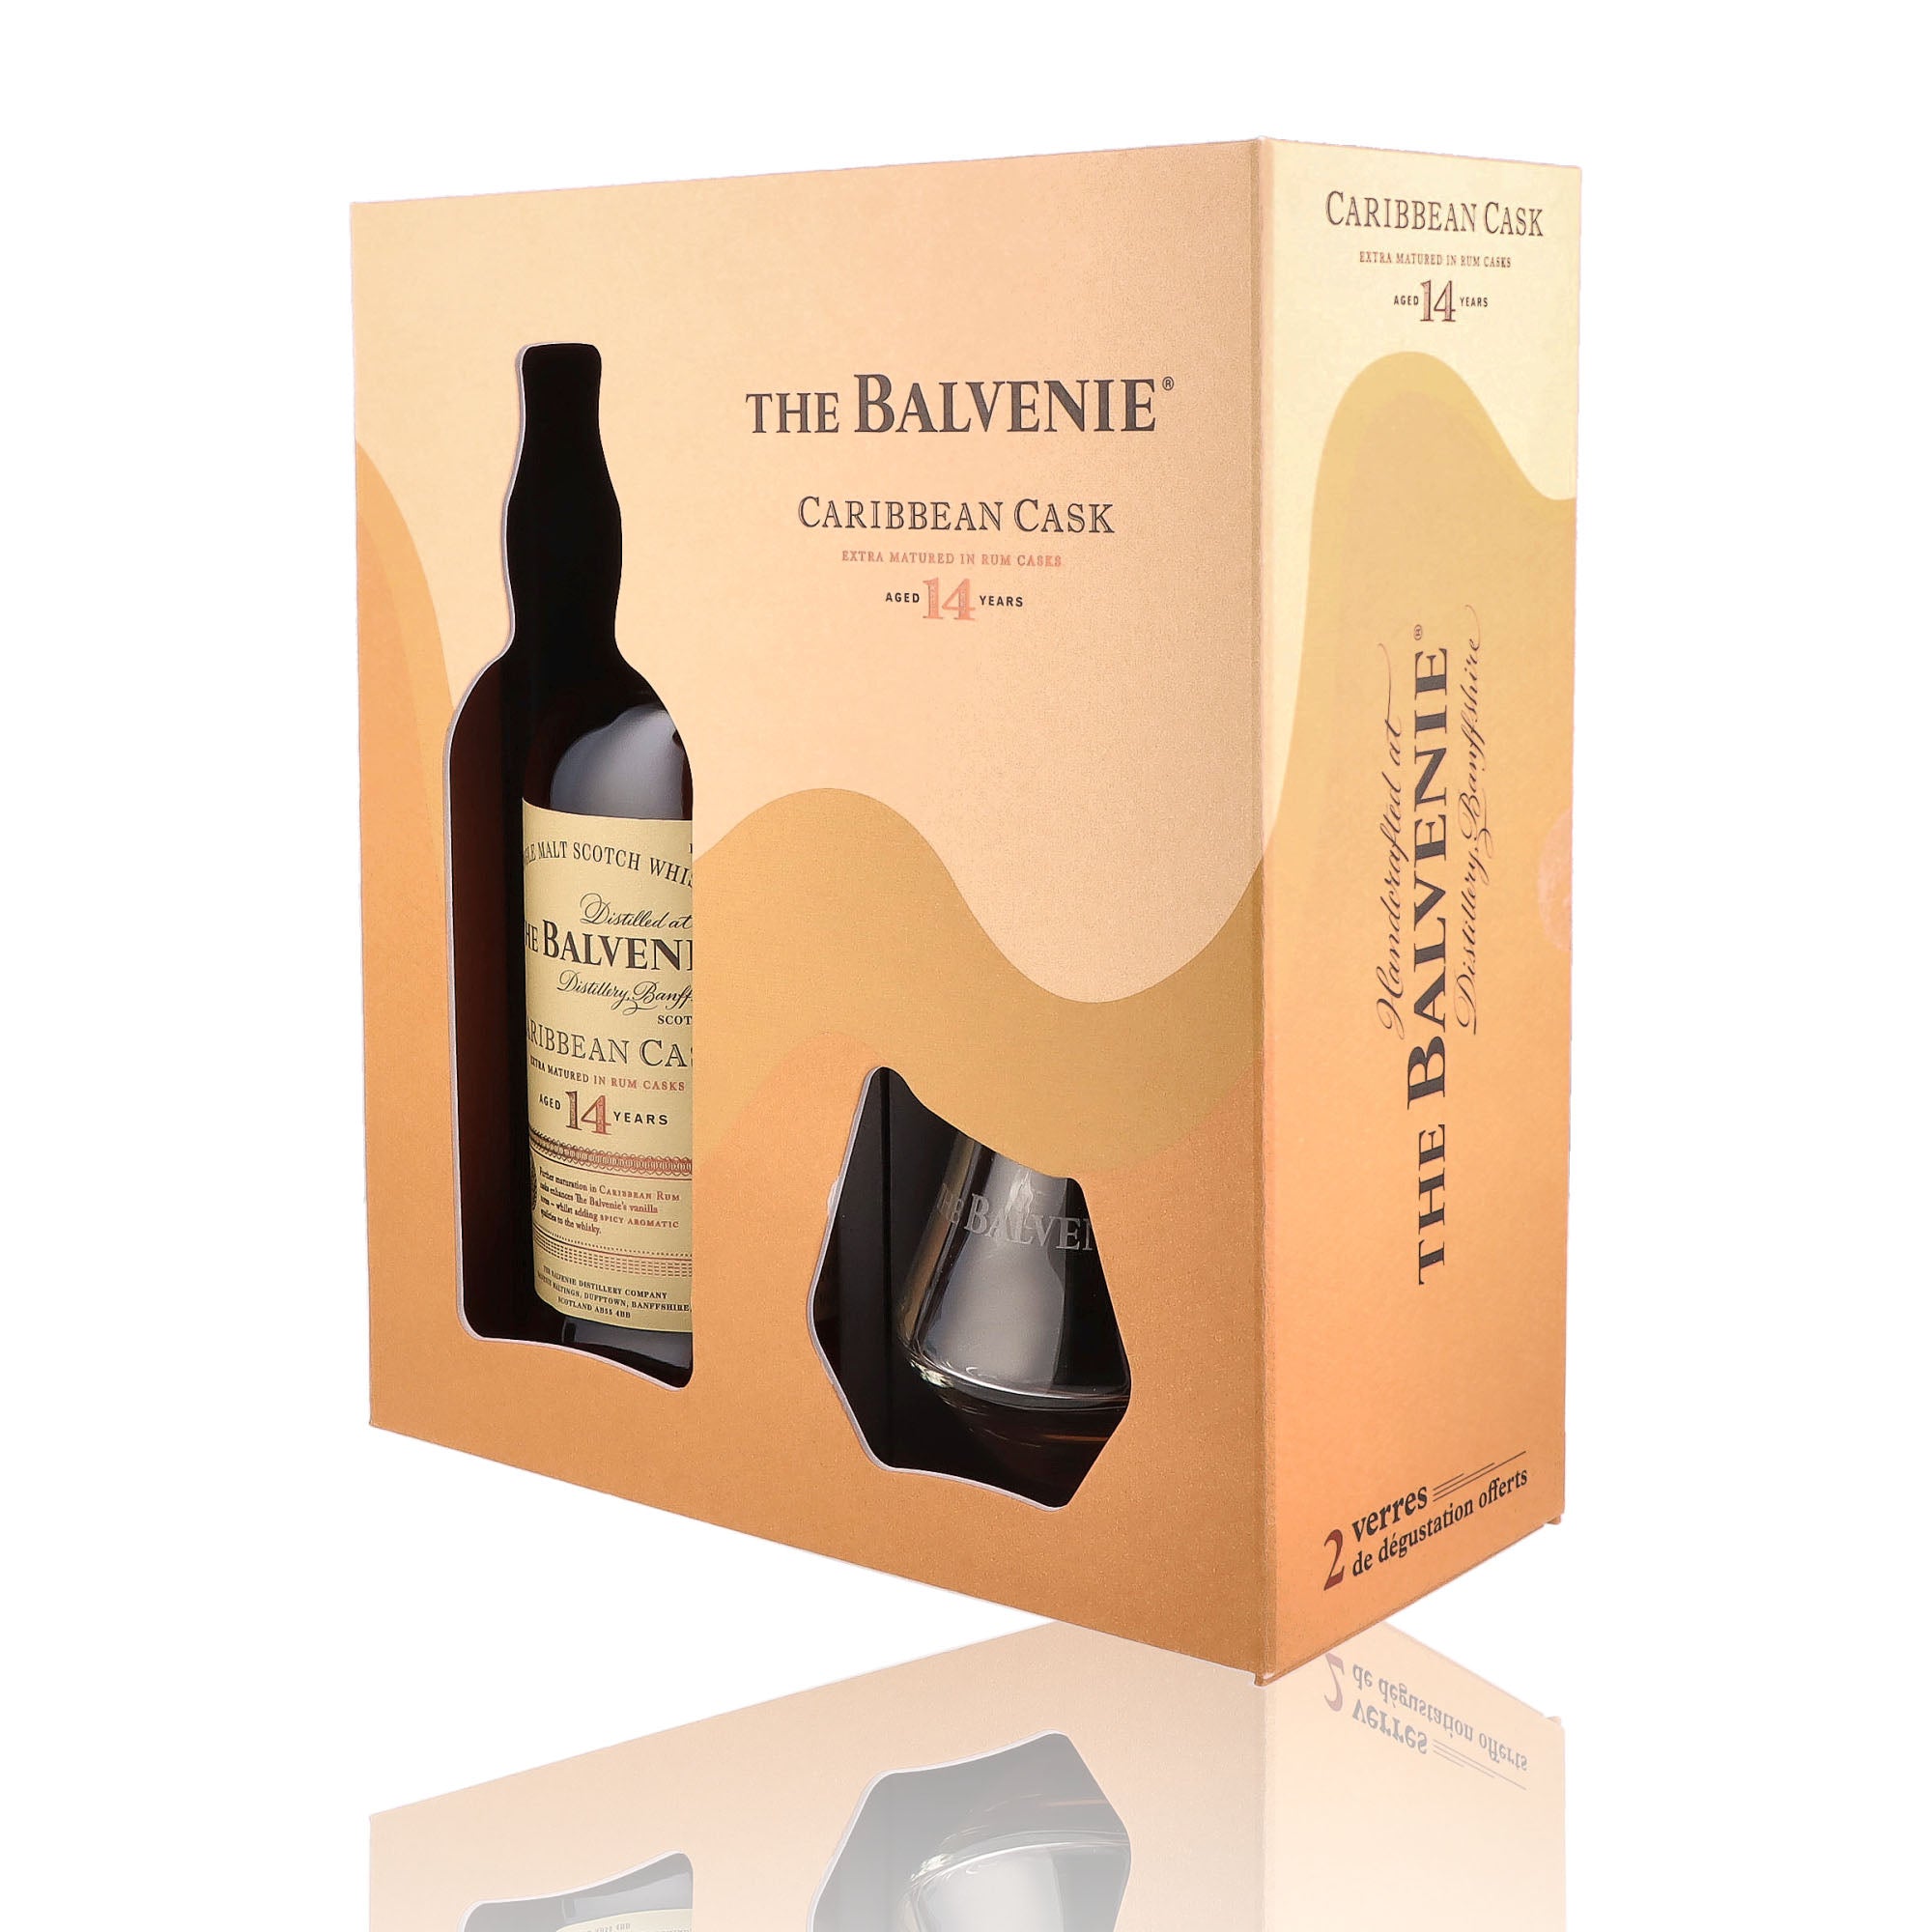 Un coffret de Scotch Whisky Single Malt de la marque Balvenie, nommée Coffret Caribbean Cask et 2 verres, 14 ans d'âge.